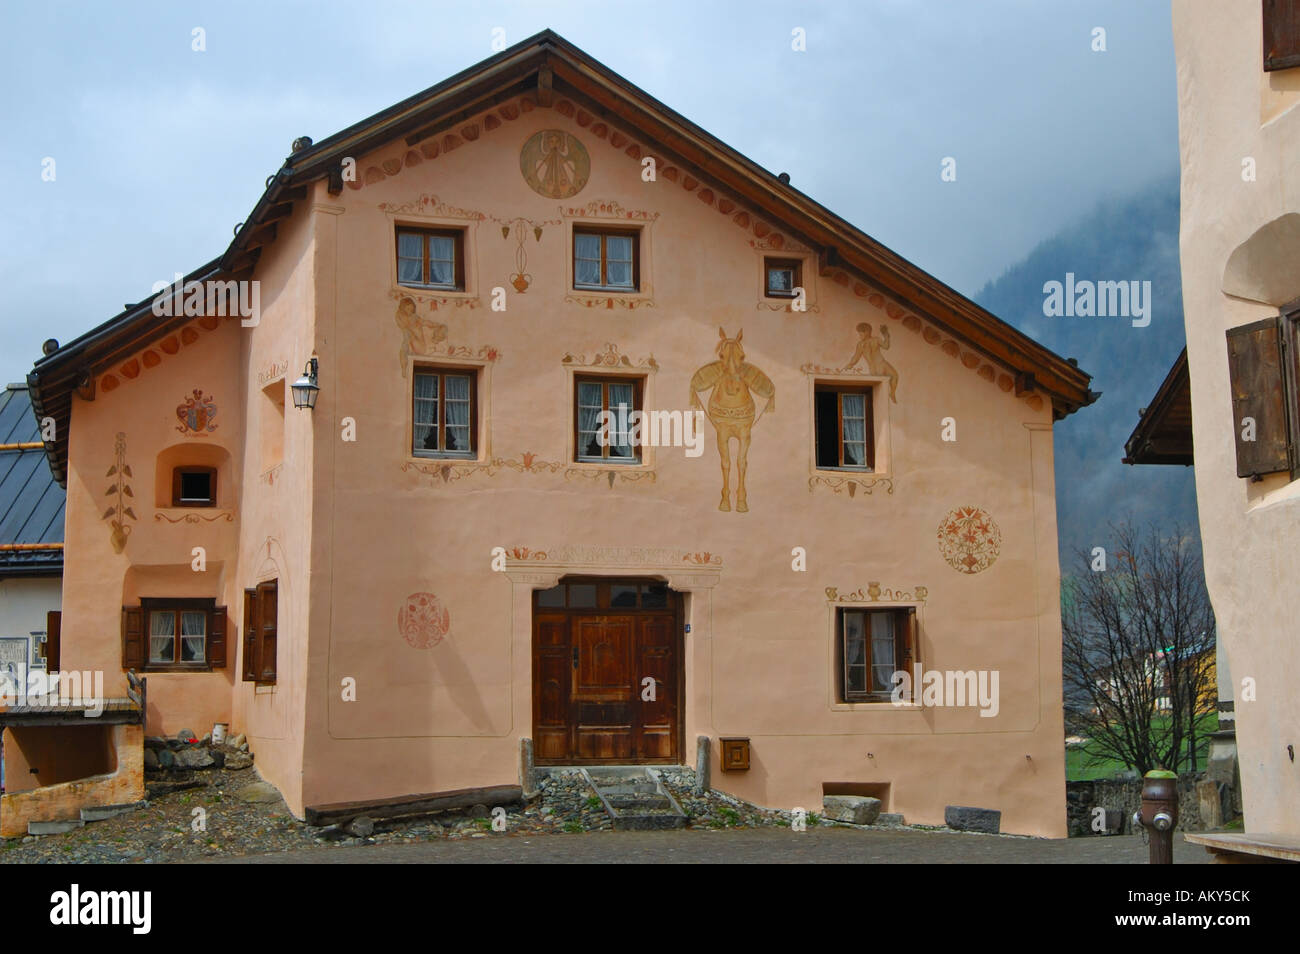 Fassade eines typischen Engadiner Hauses geschmückt mit  Sgraffito-Ornamenten, Guarda, Engadin, Schweiz Stockfotografie - Alamy